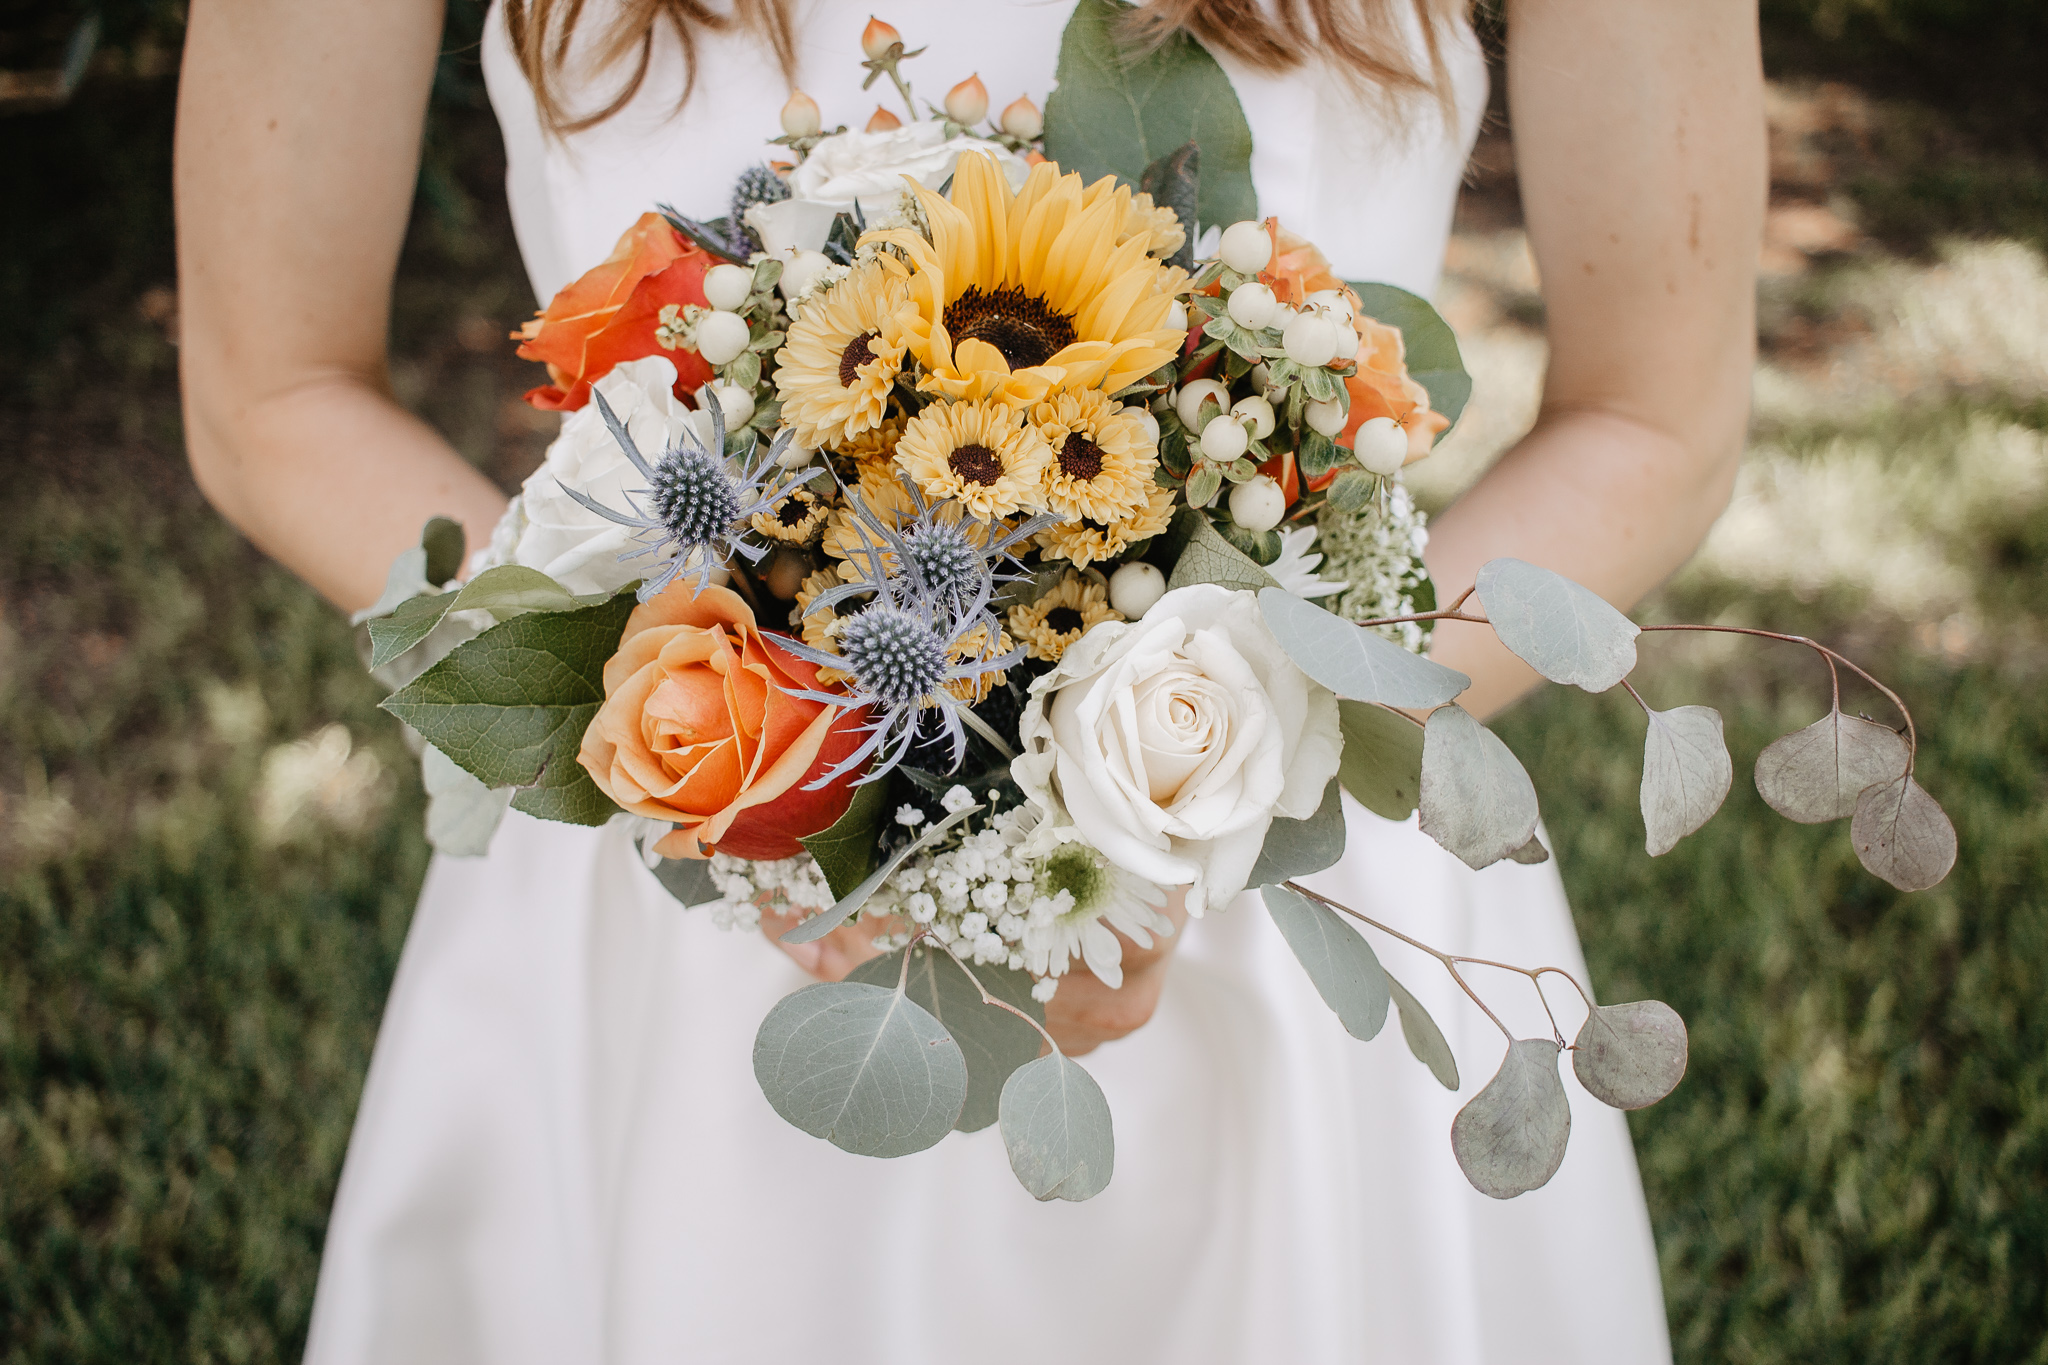 Best of 2018 | Ohio Wedding + Engagement Photographer | Catherine Milliron Photography